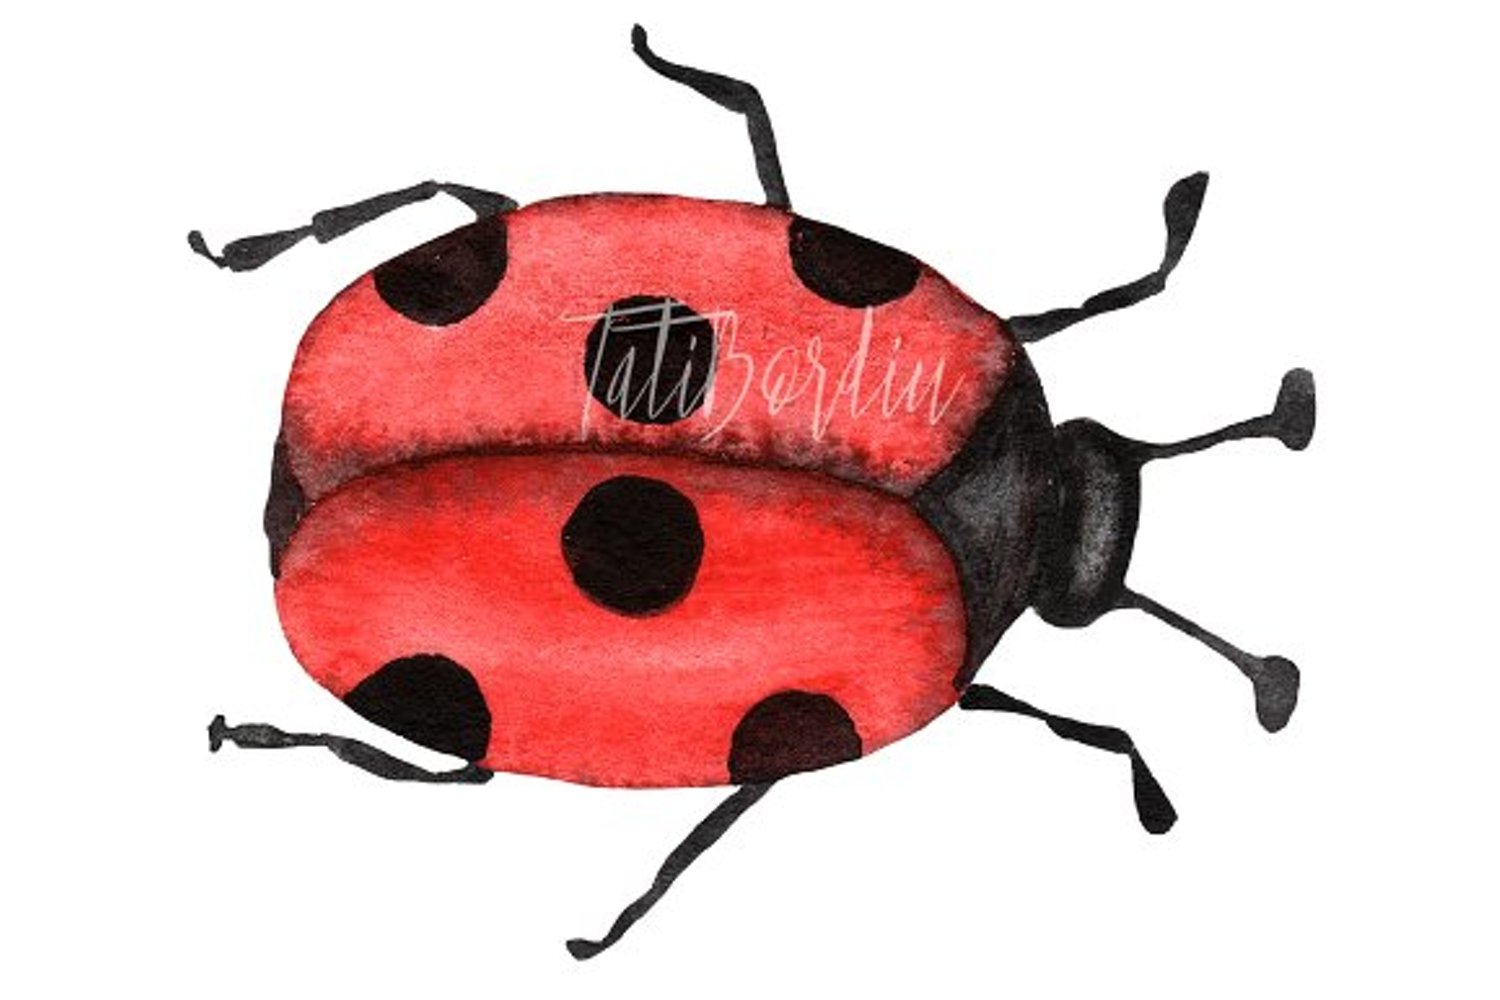 Colorful ladybug image.